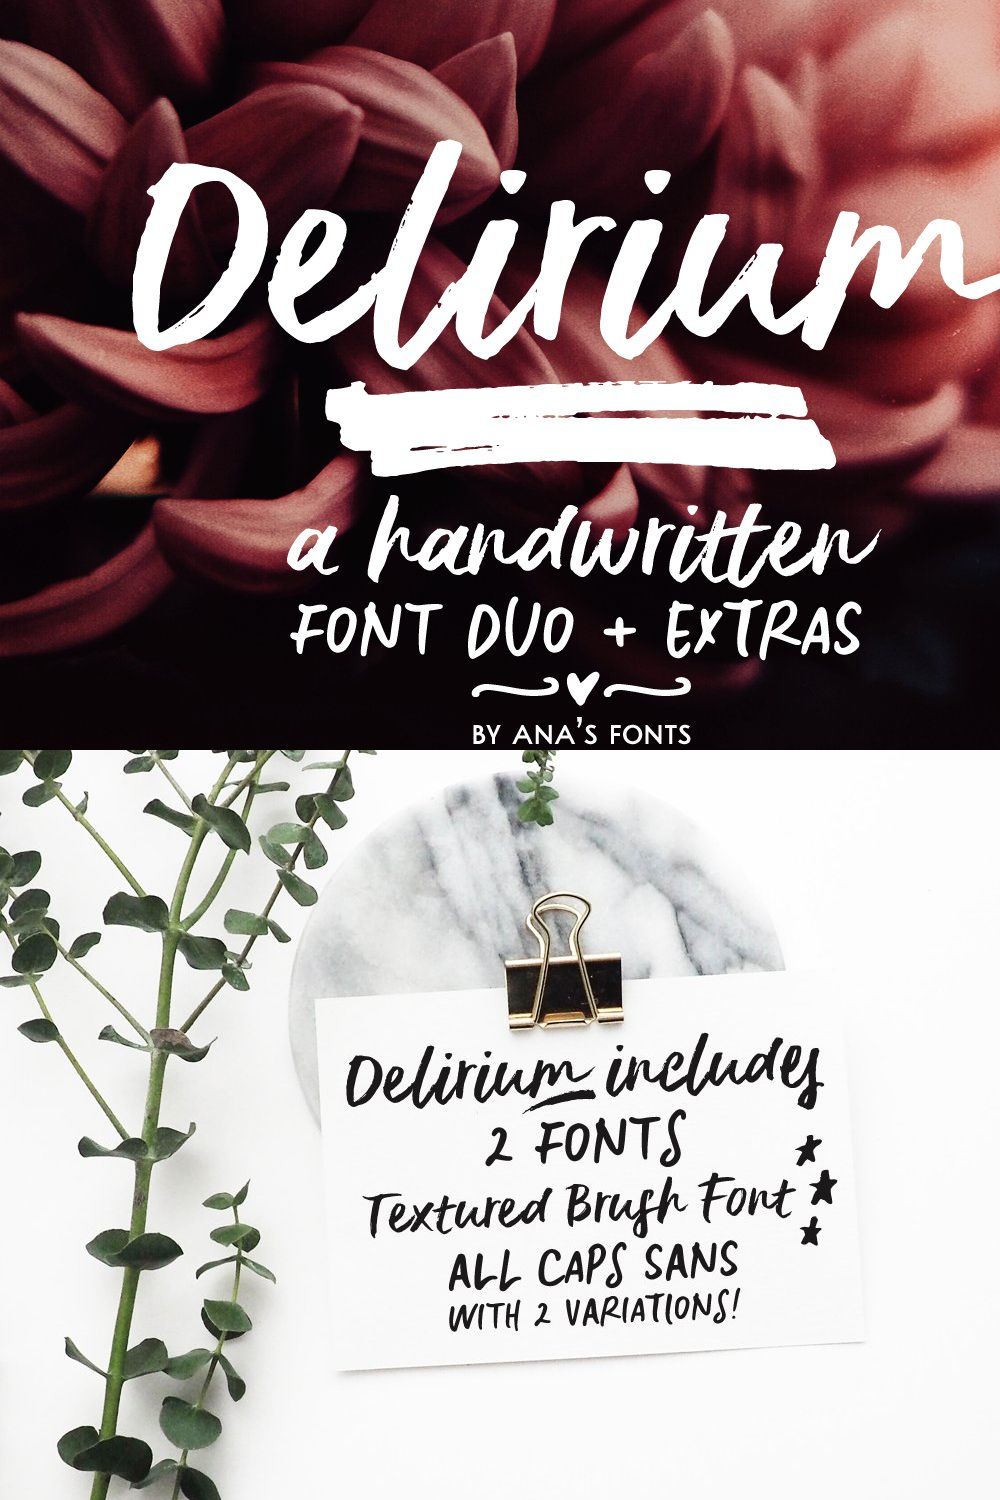 Delirium brush font duo pinterest preview image.